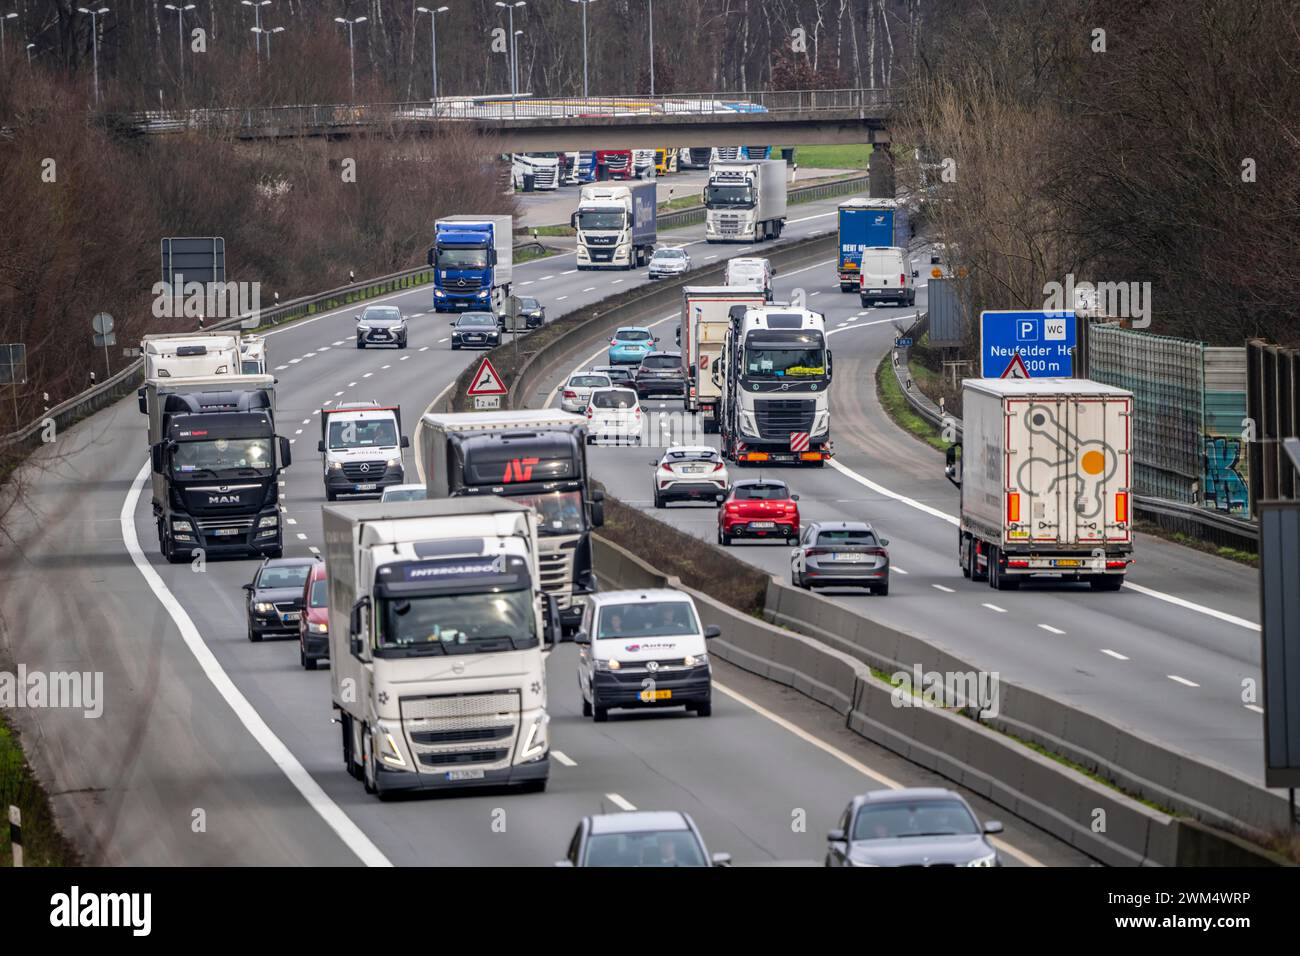 Starker Verkehr, hauptsächlich Lkw, auf der Autobahn A40 bei Rheurdt, bei der Raststätte Neufelder Heide, wenige Kilometer vor der Grenze zu den Niederlanden Stockfoto